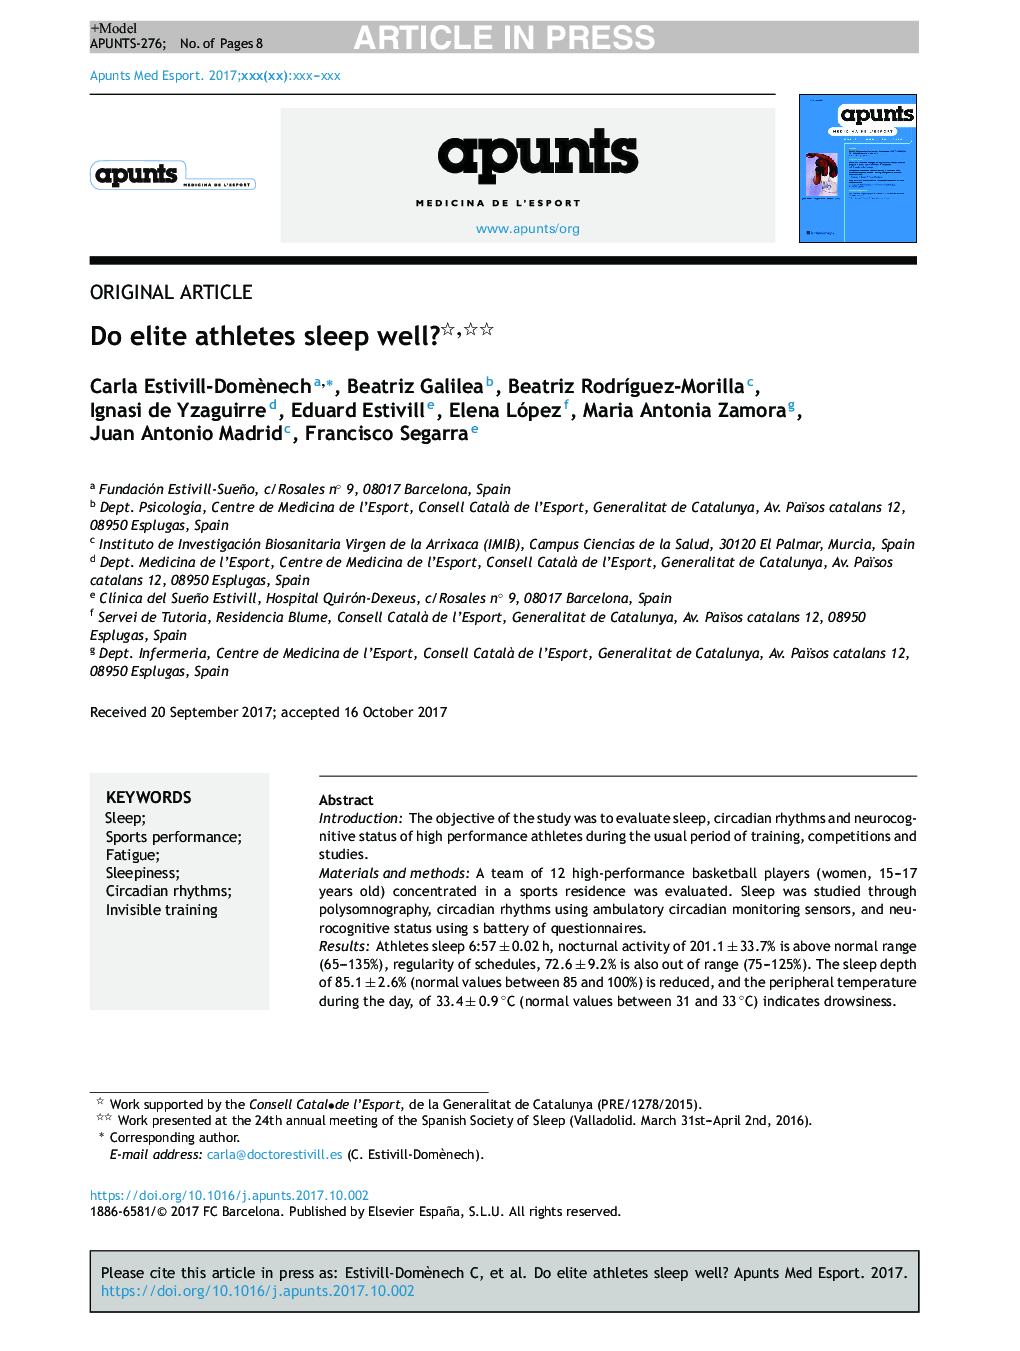 Do elite athletes sleep well?